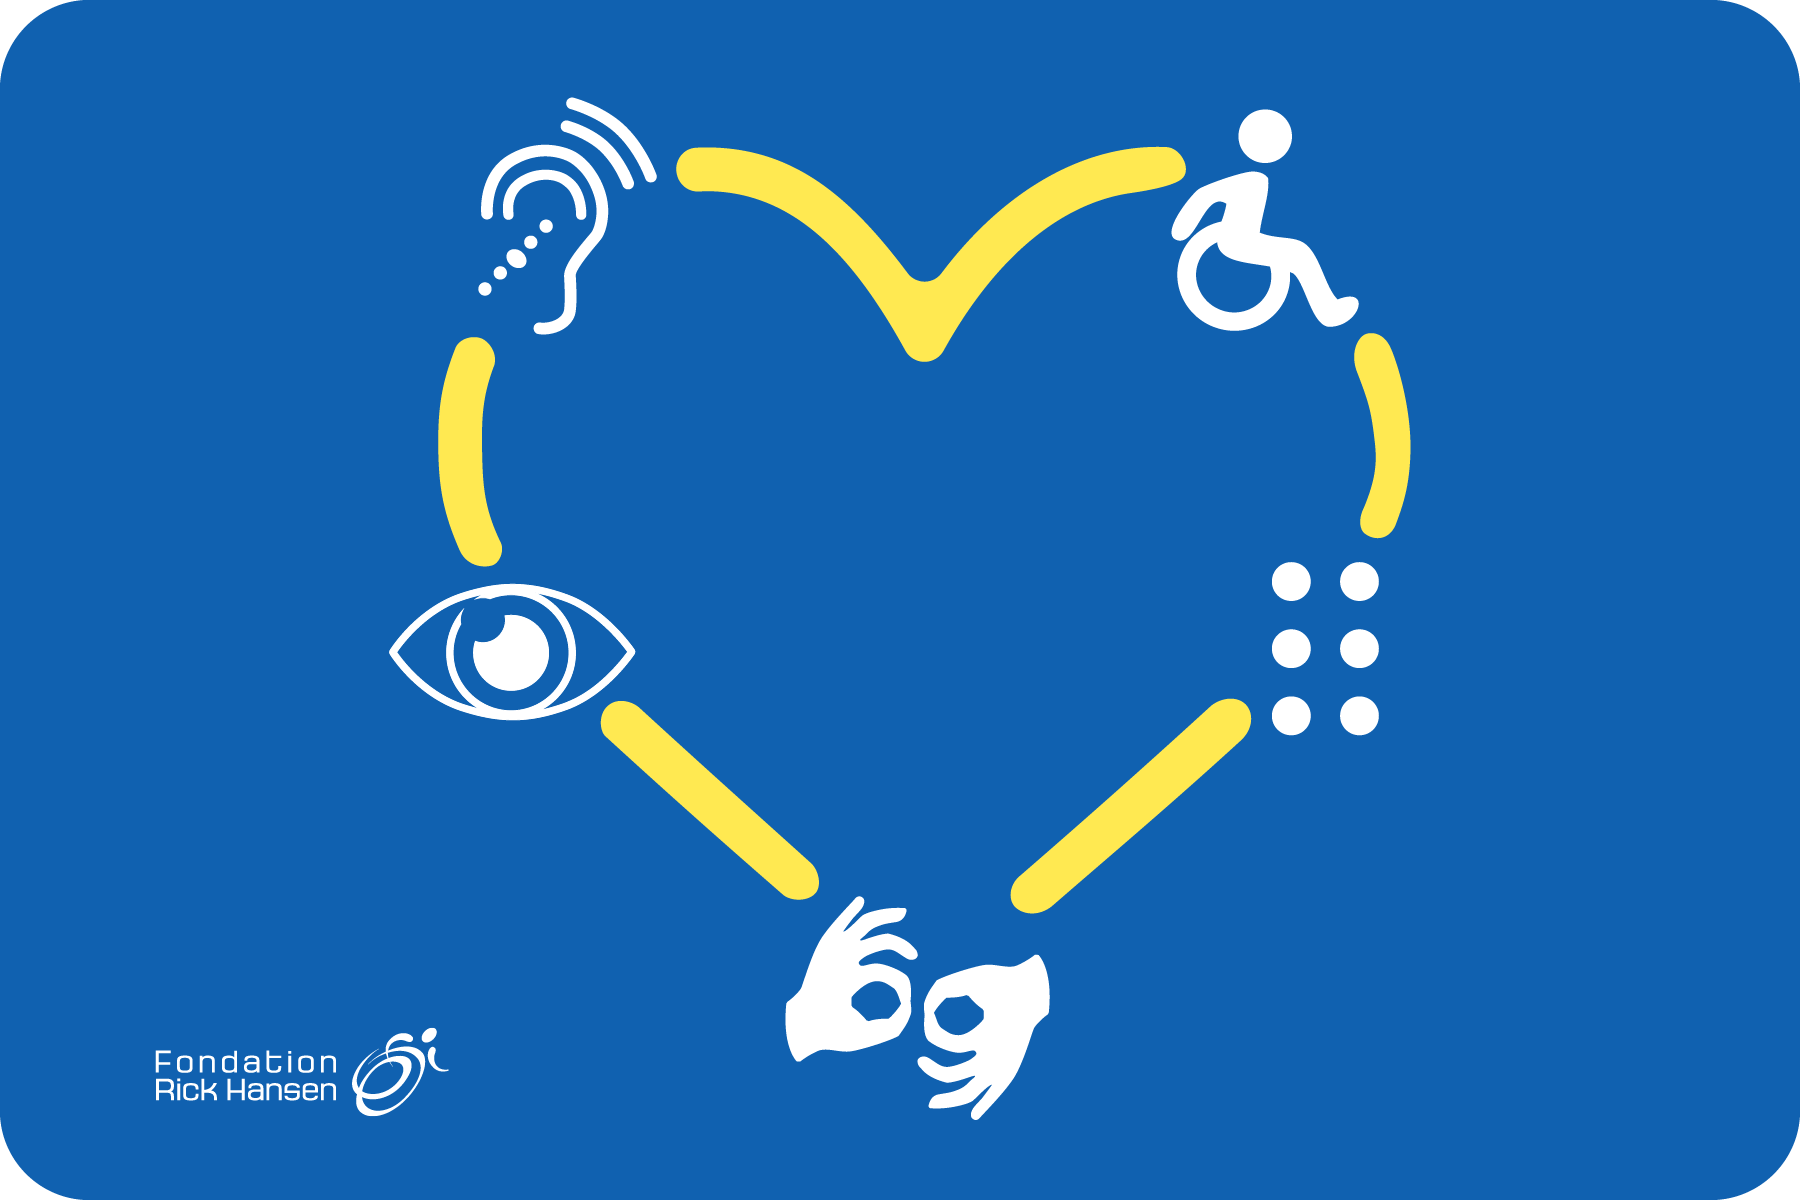 Un cœur jaune est relié à des symboles blancs qui représentent le braille, le langage des signes, la cécité, la surdité ou les troubles auditifs et l’utilisation d’un fauteuil roulant, le tout sur un fond bleu. Le logo de la Fondation Rick Hansen se trouve dans le coin inférieur gauche.